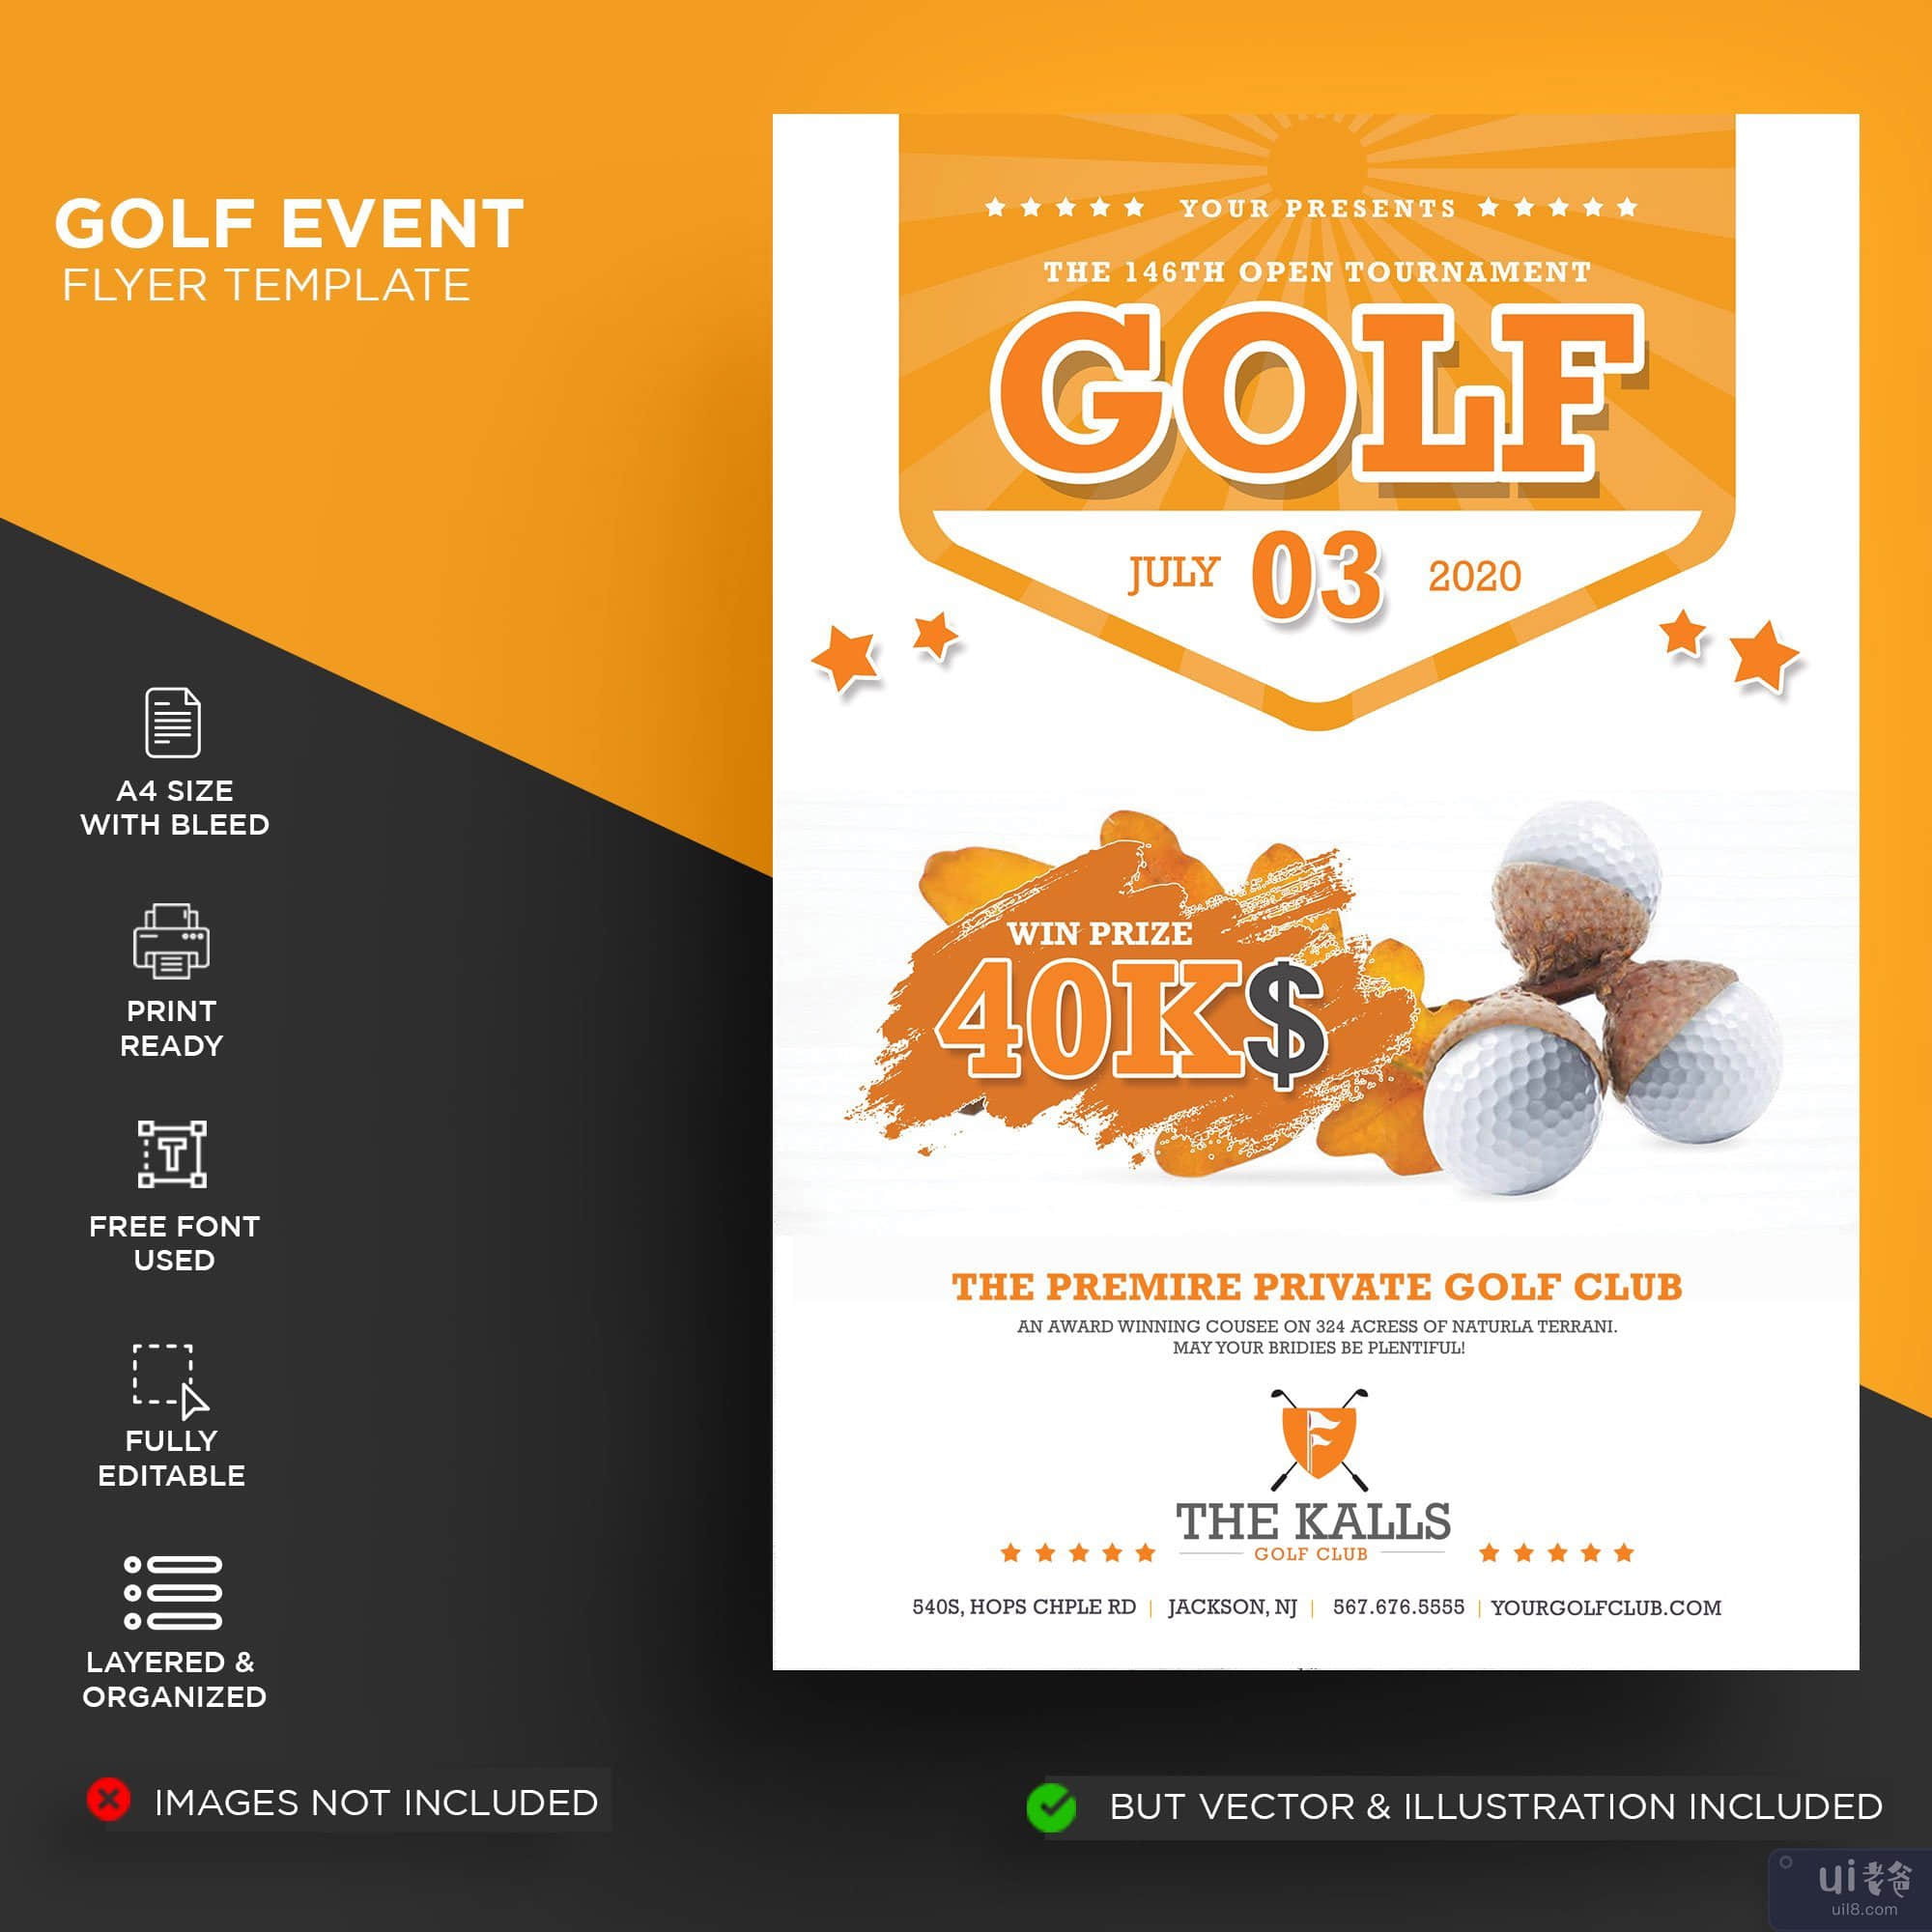 高尔夫赛事传单模板(Golf event flyer template)插图